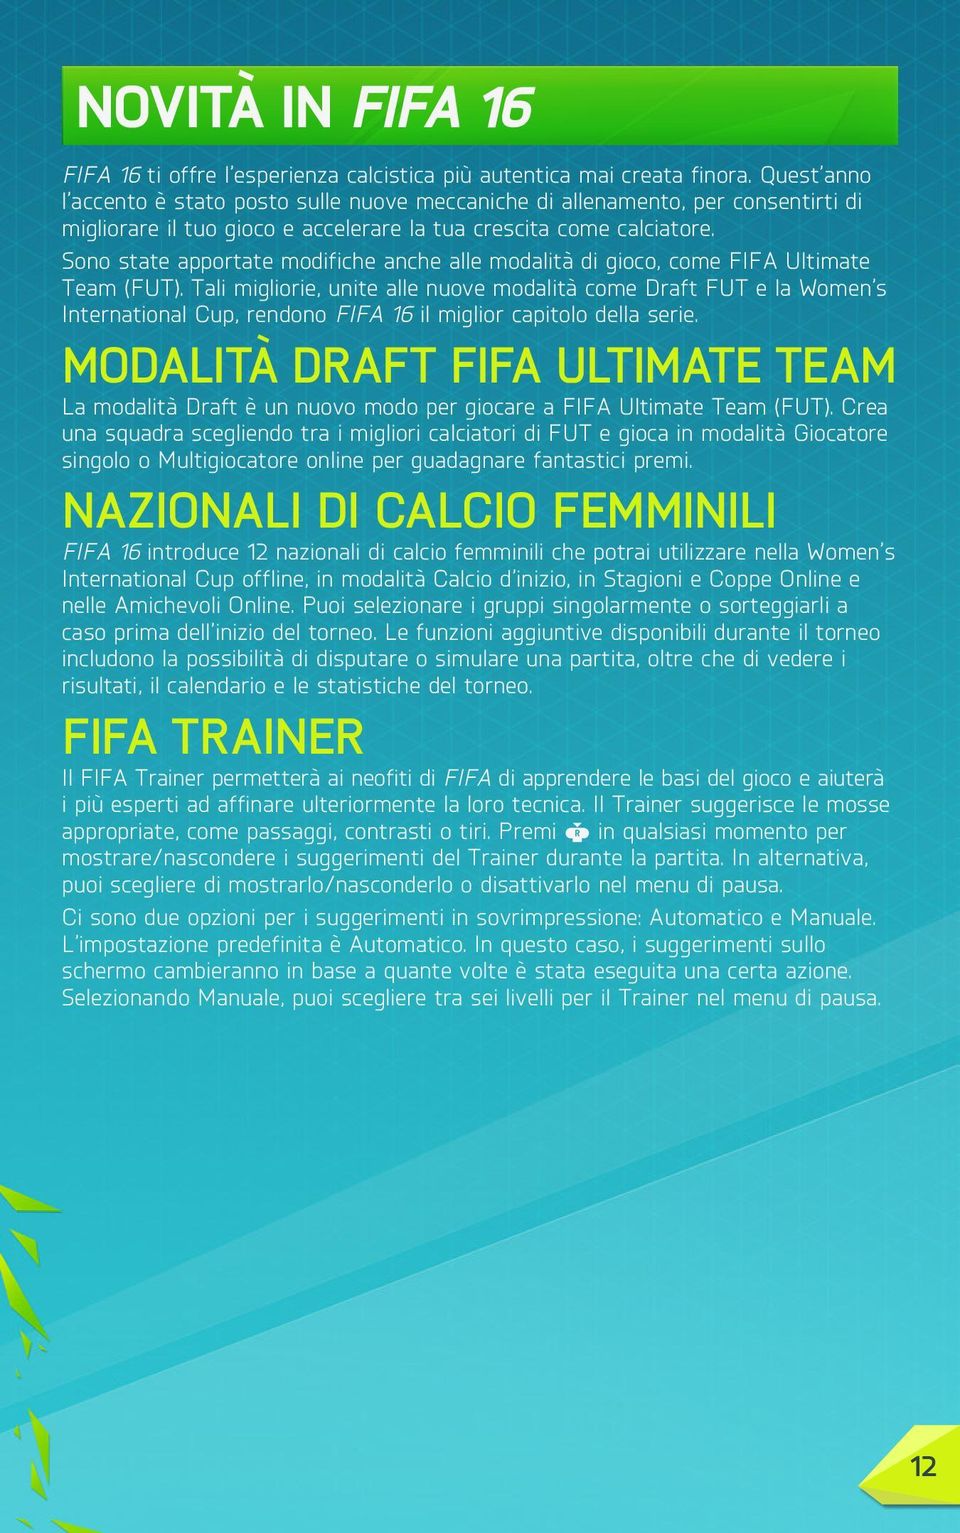 Sono state apportate modifiche anche alle modalità di gioco, come FIFA Ultimate Team (FUT).